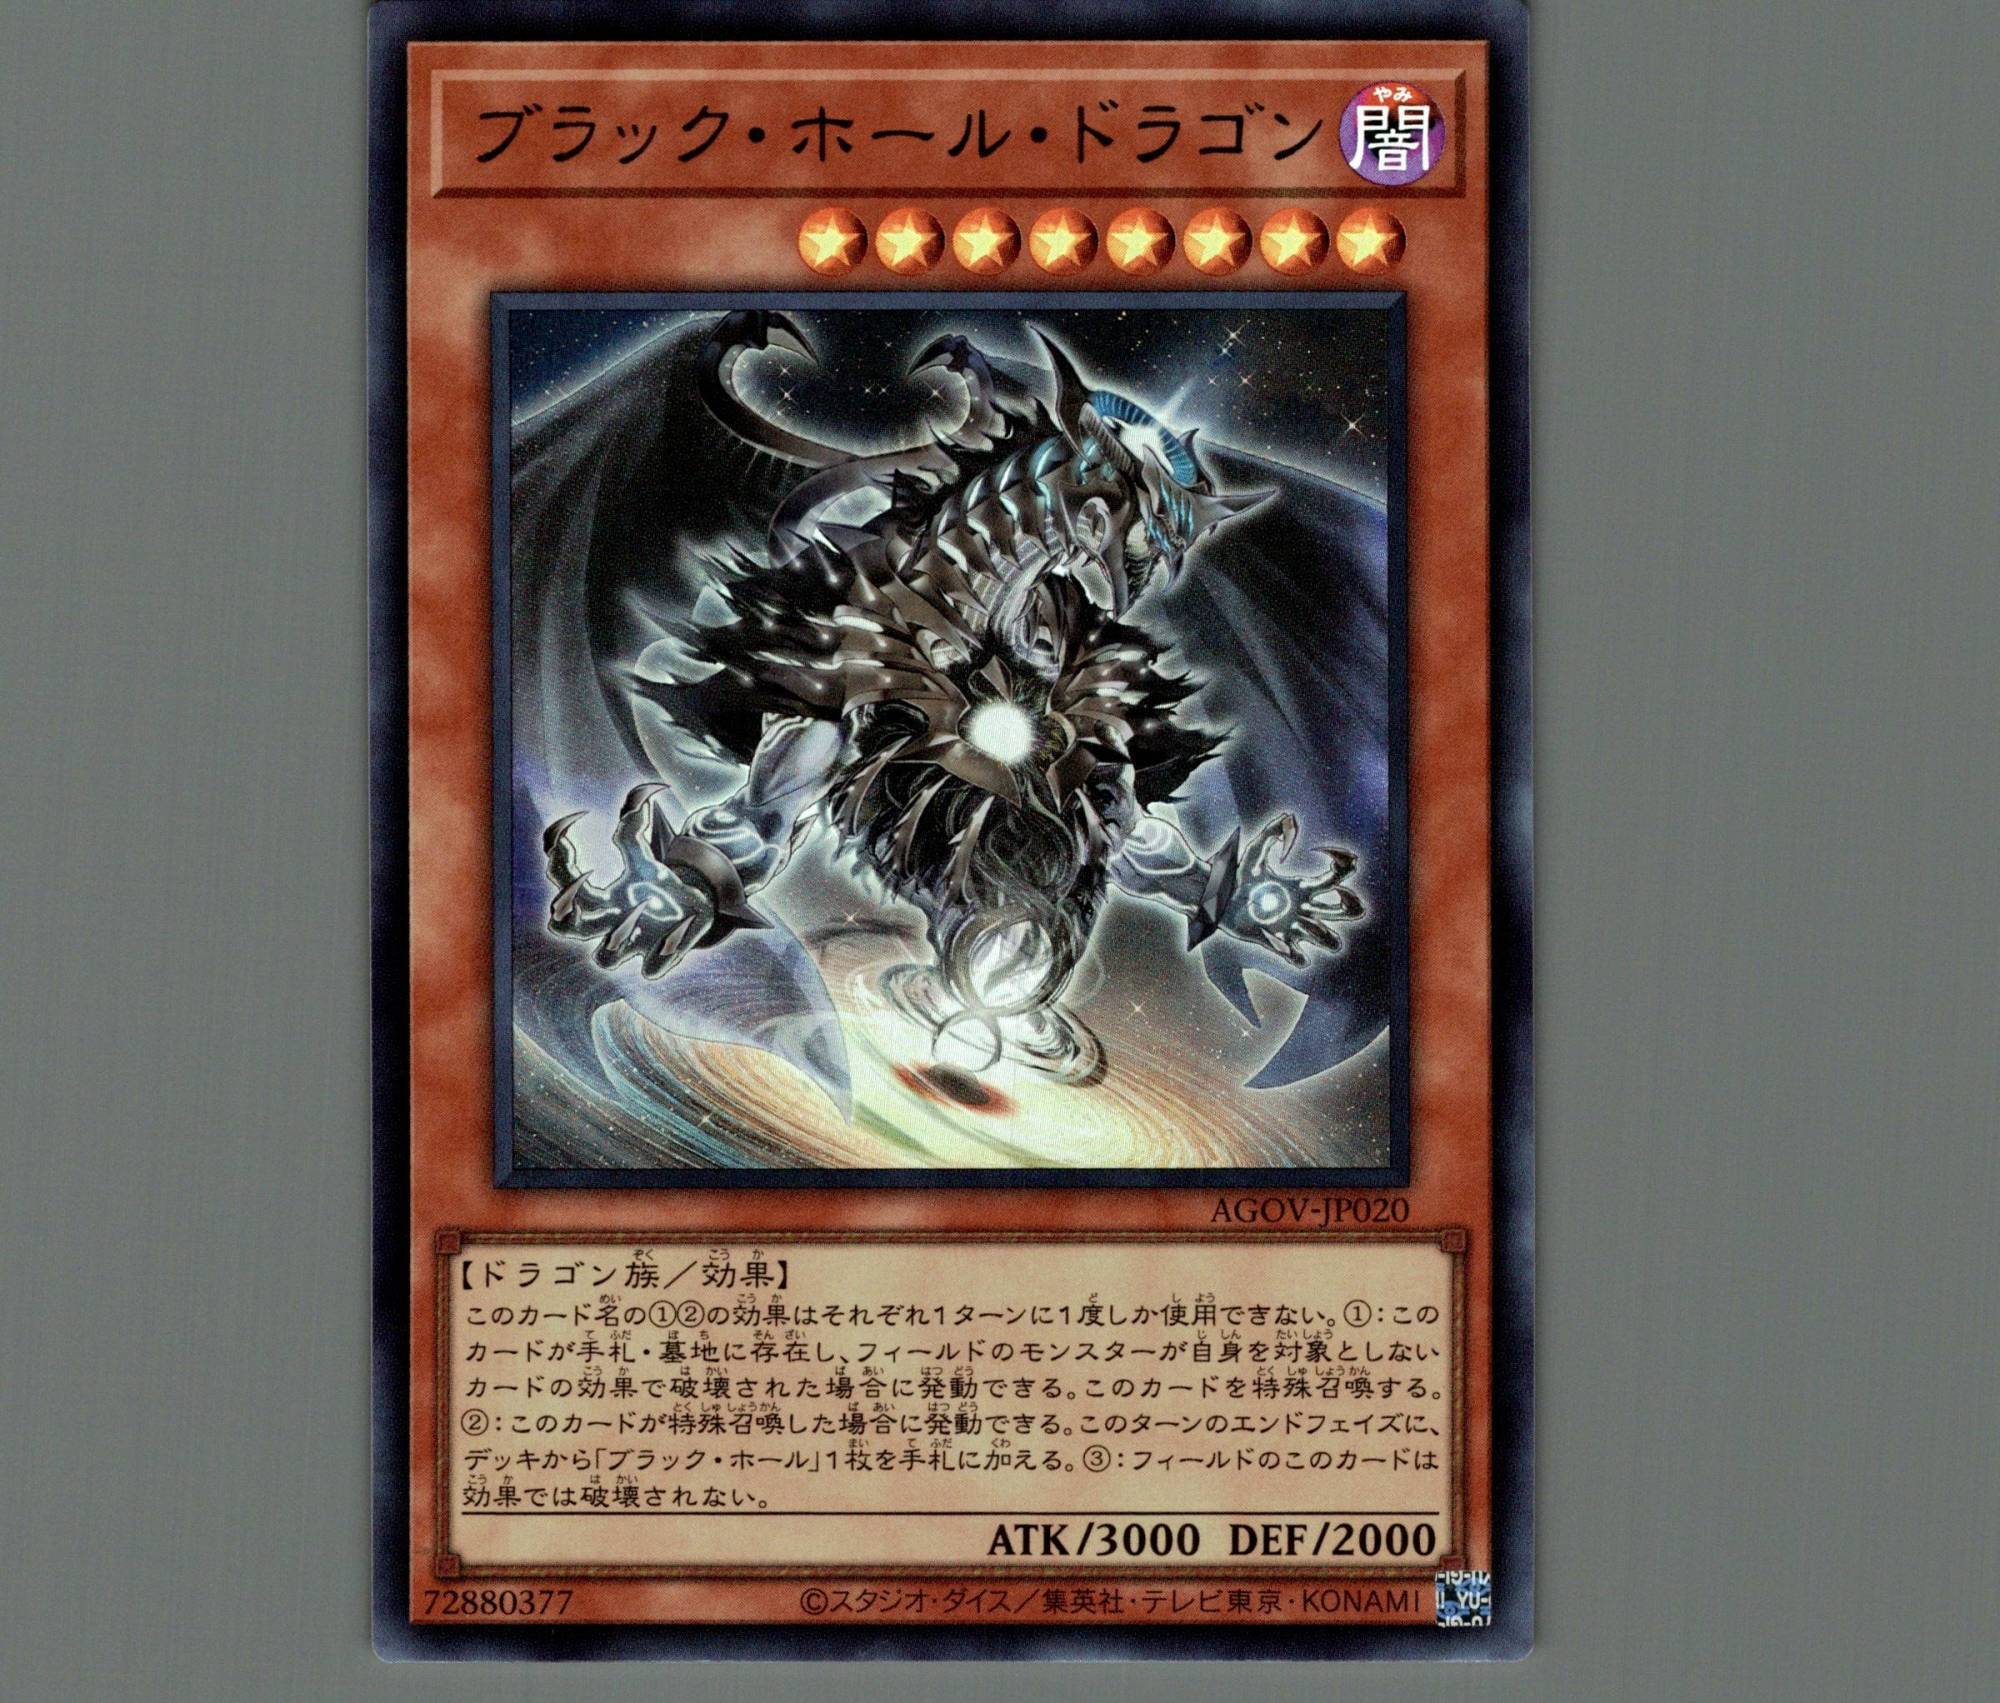 ブラック・ホール・ドラゴン/ウルトラ【モンスター】《AGOV-JP020》 - メルカード遊戯王